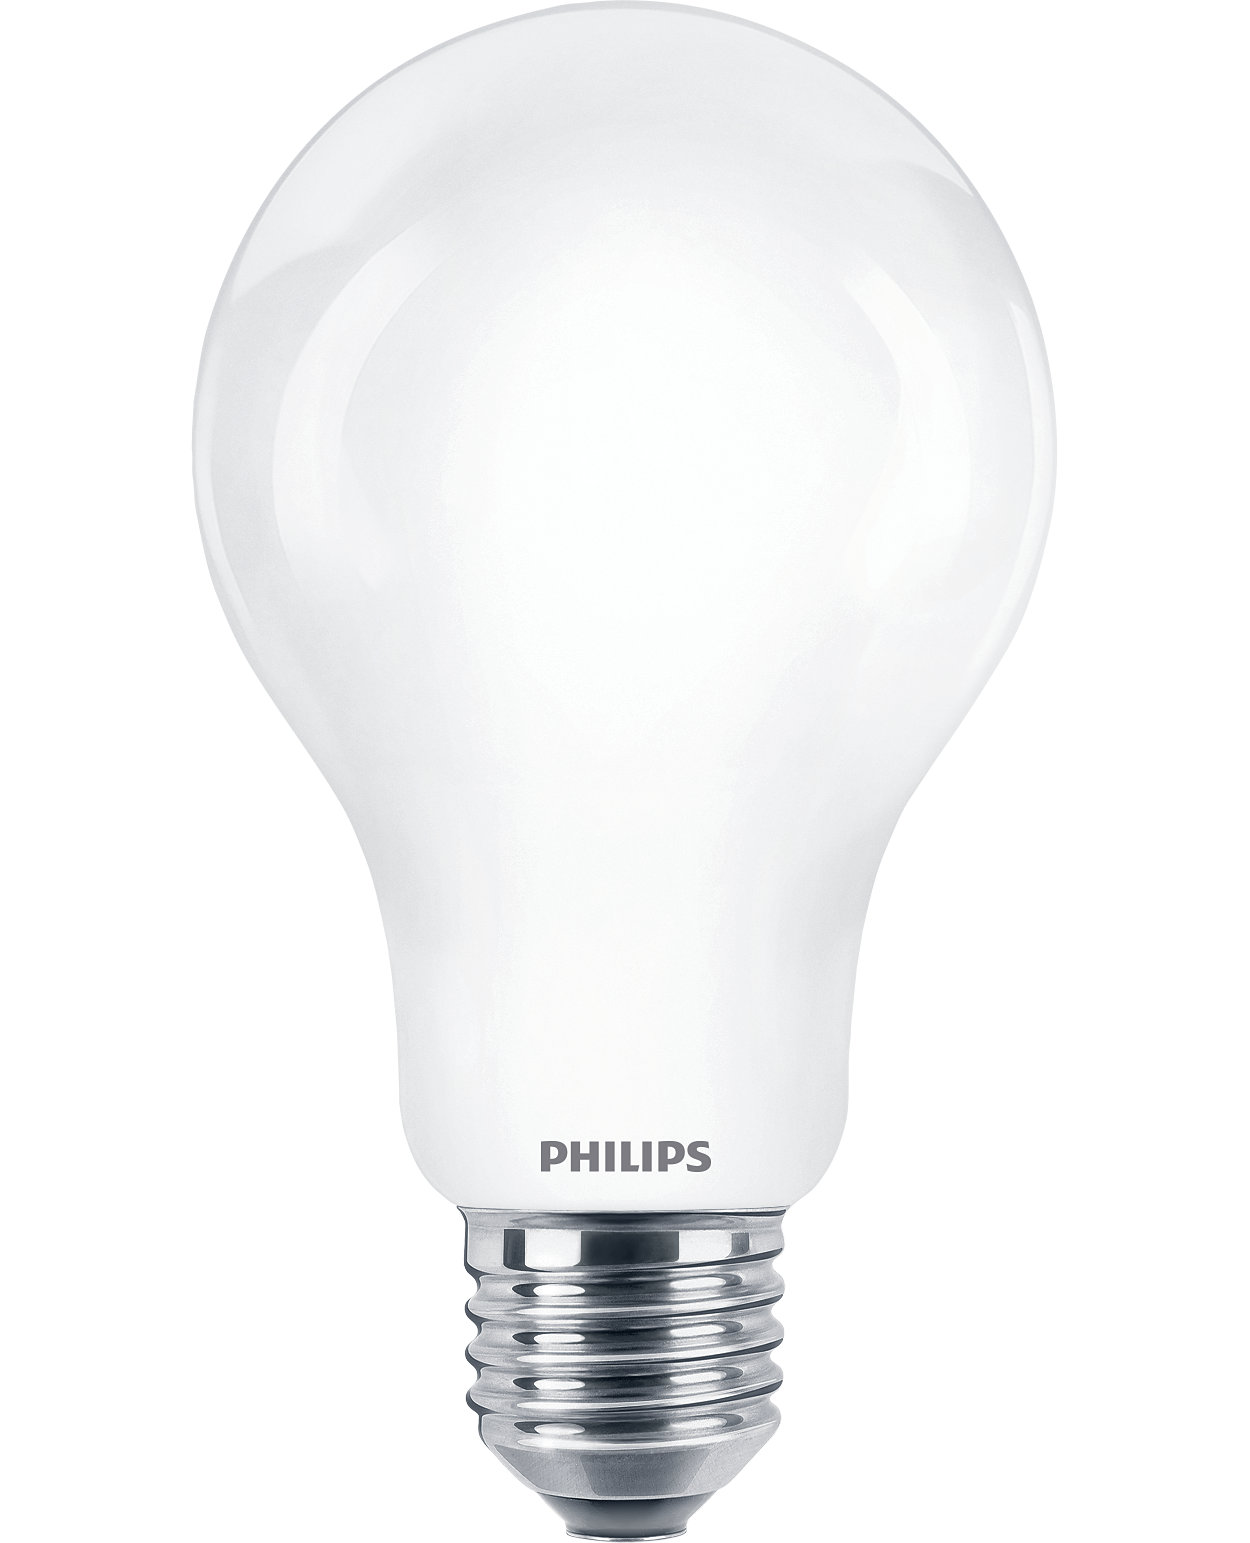 Voor dagelijkse verlichting bieden CorePro LED-lampen met een hoog aantal lumen een uitstekende lichtkwaliteit